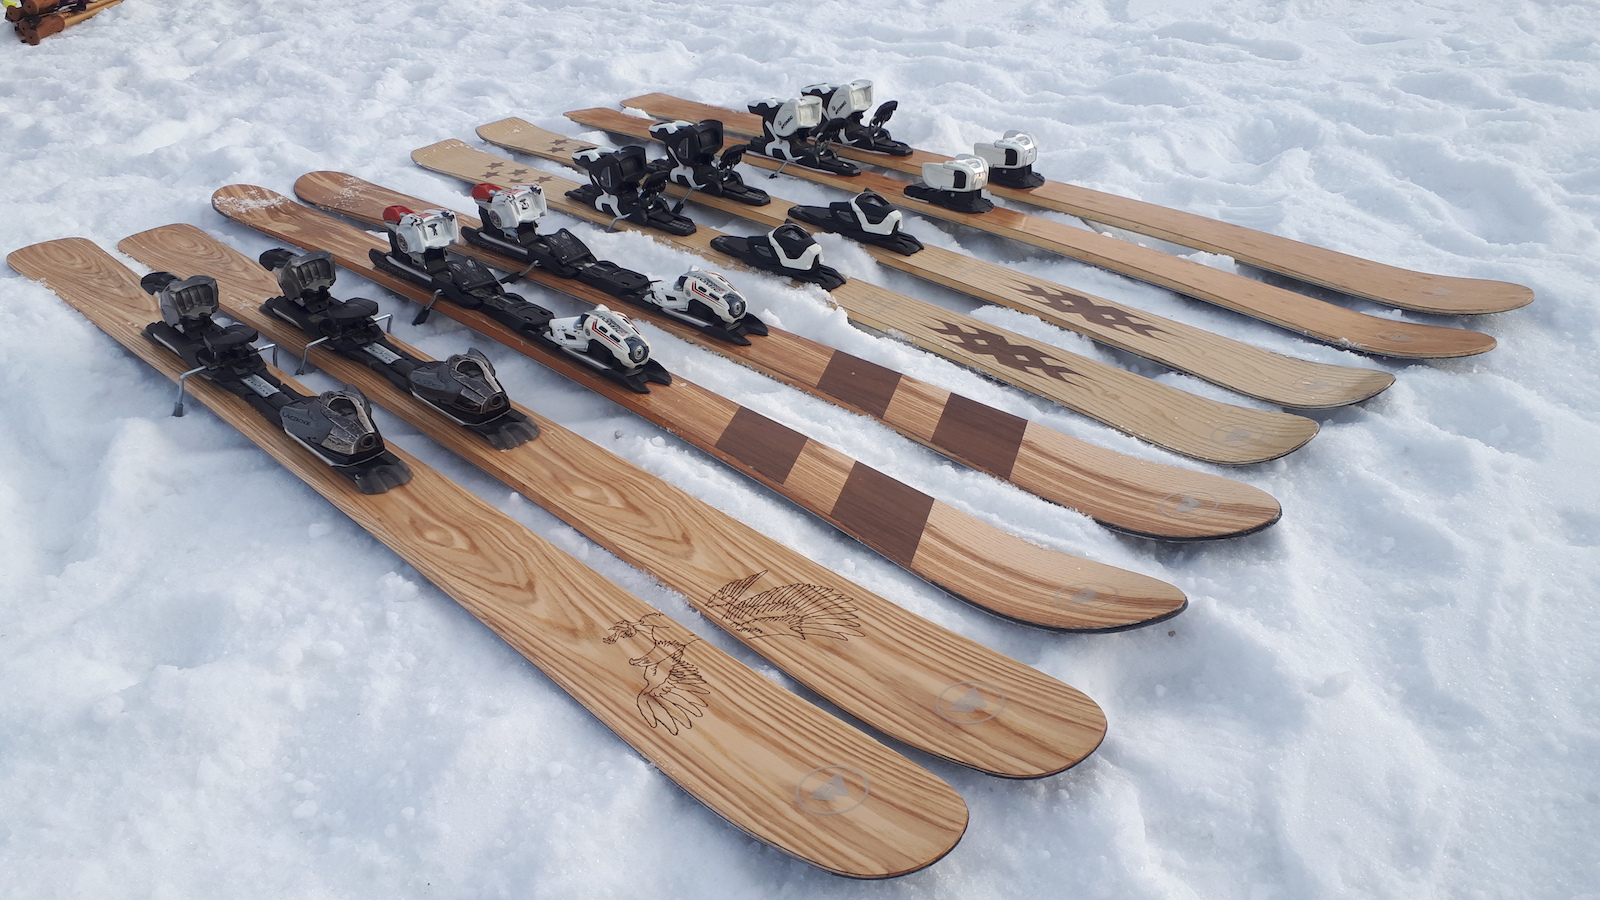 Los esquís artesanos de madera de un carpintero de Sort “atrapan” a todo aquel que los esquía